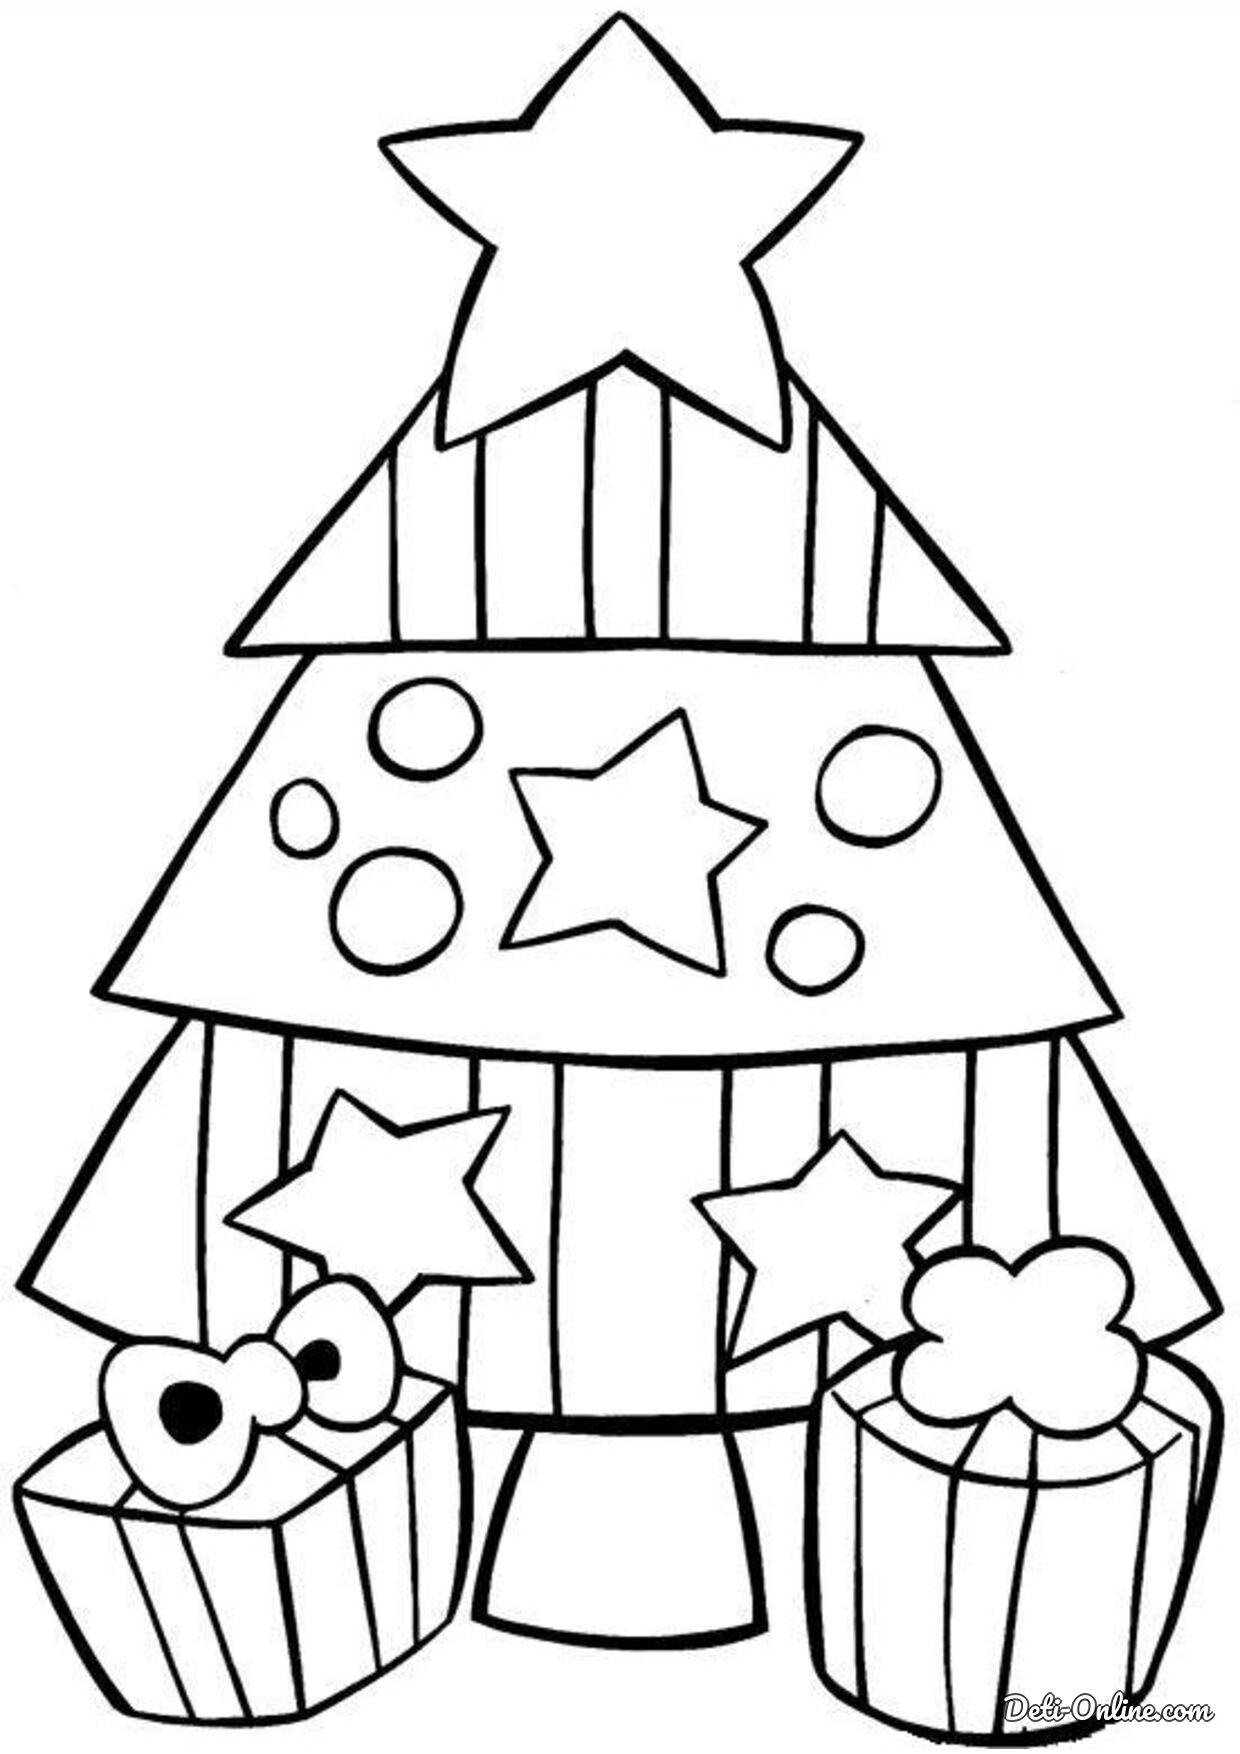 раскраска новогодняя елка картинка для детей распечатать 2